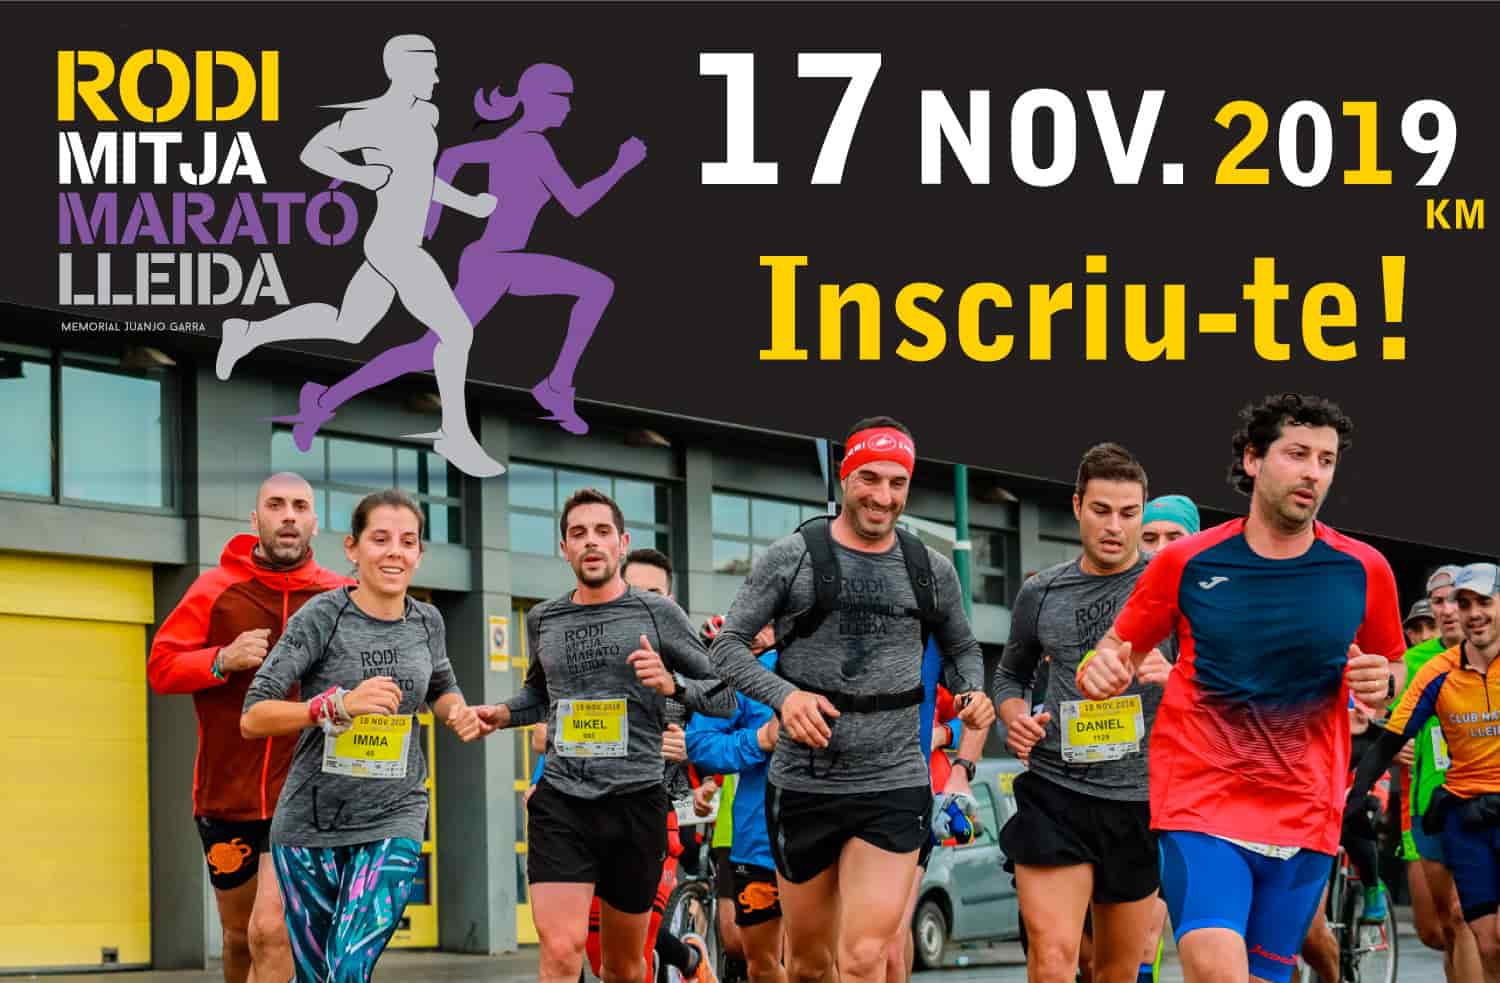 Inscriu-te a la Rodi Mitja Marató Lleida